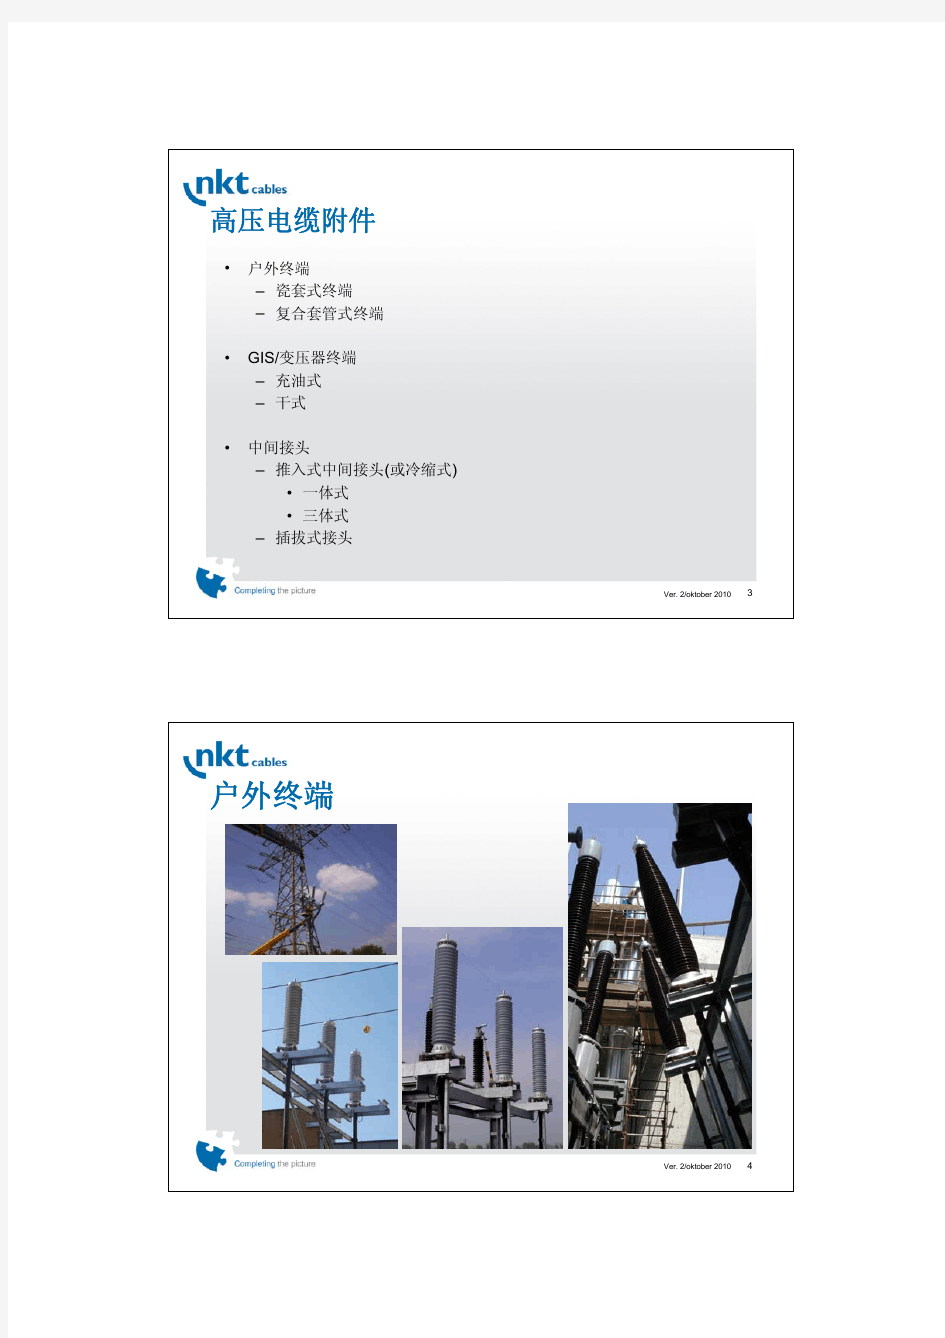 德国nkt高压电缆附件产品介绍 中文